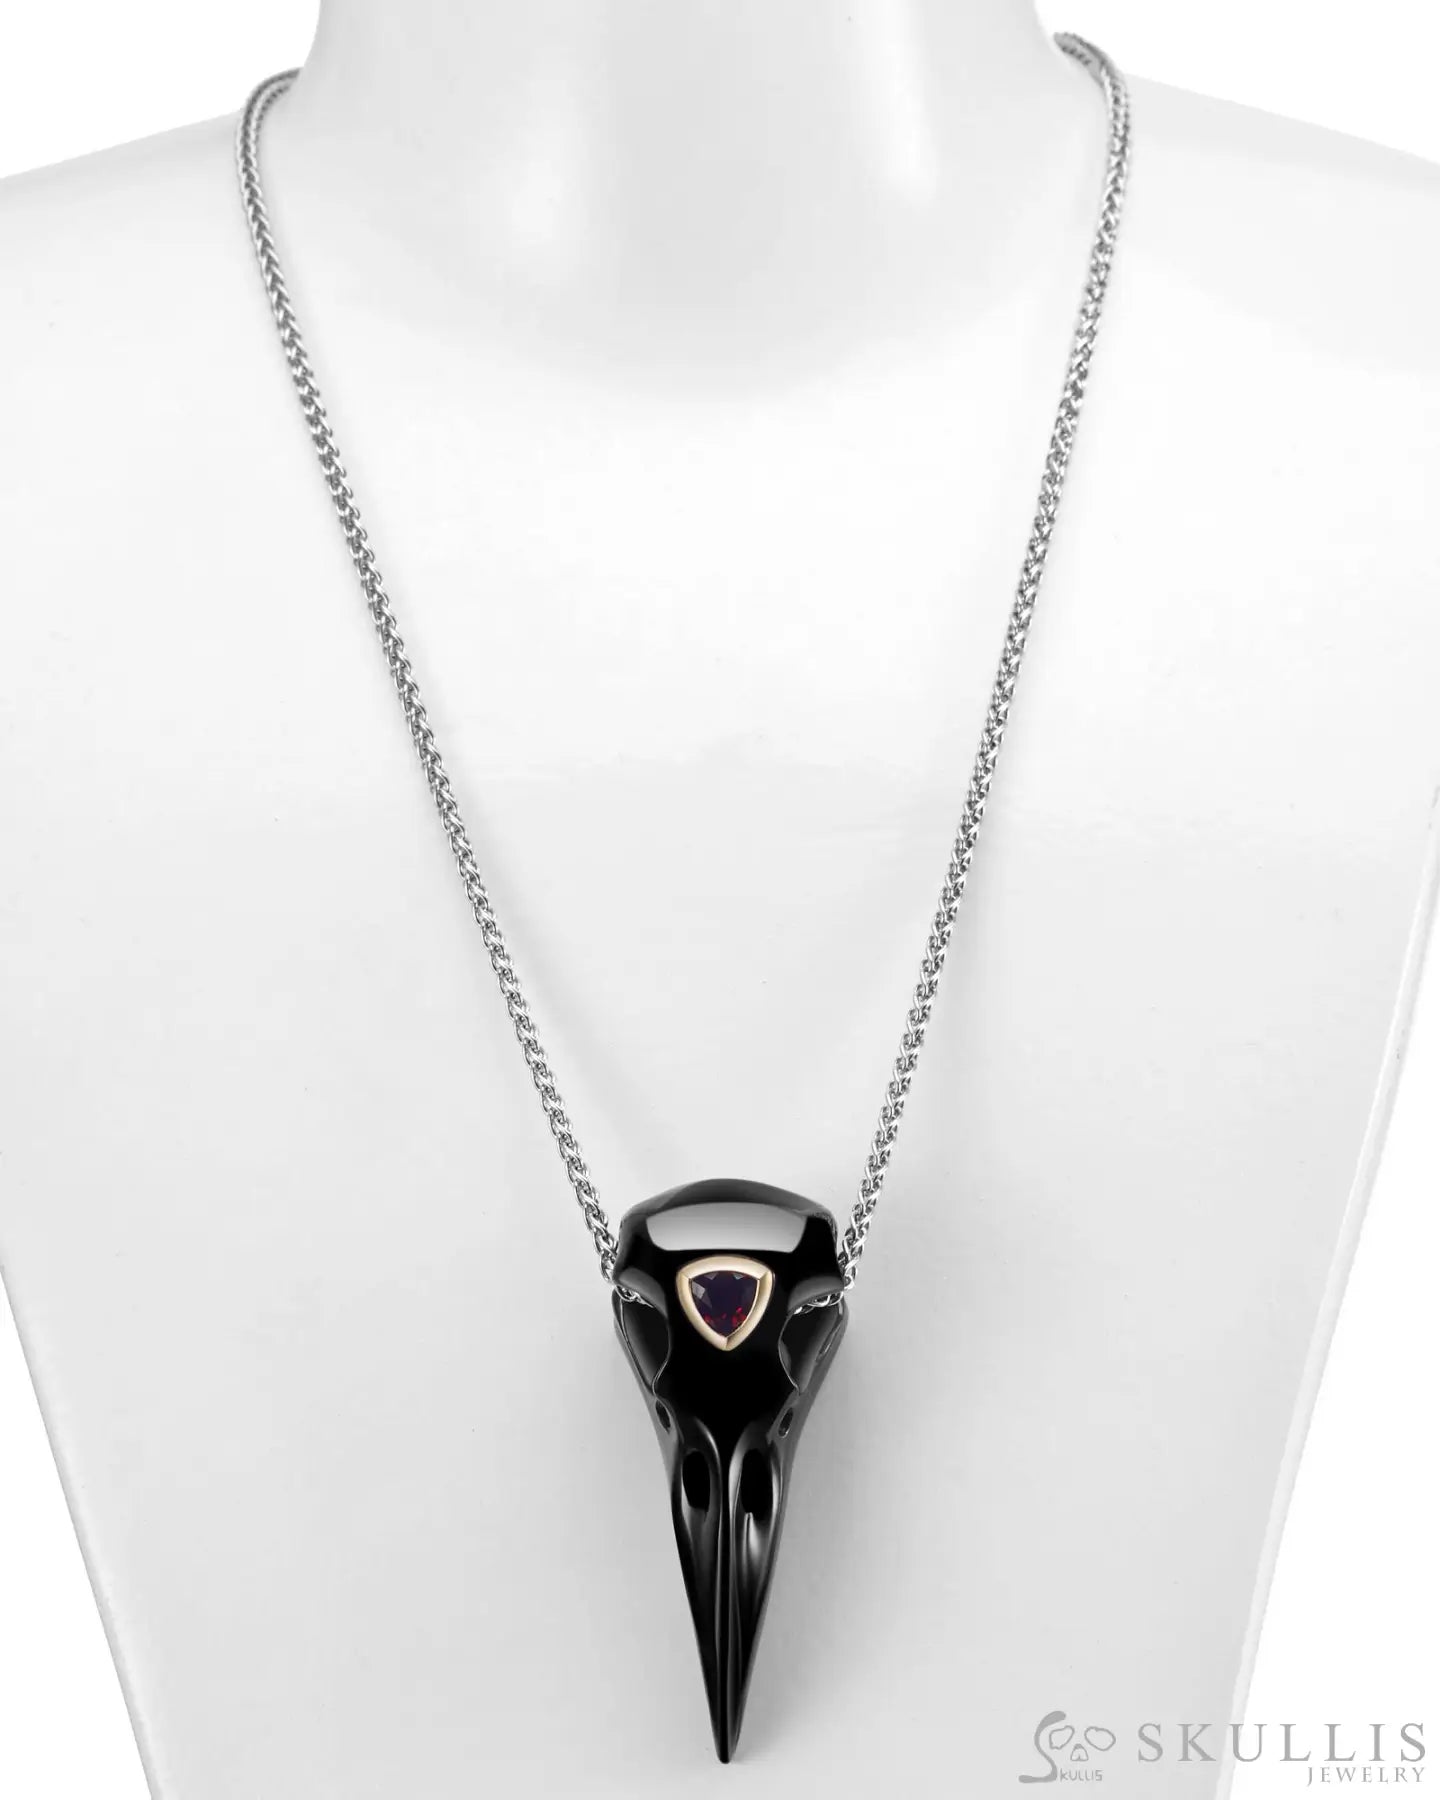 Gem Raven Pendant Necklace Of Black Obsidian Carved Raven With Garnet Eye In